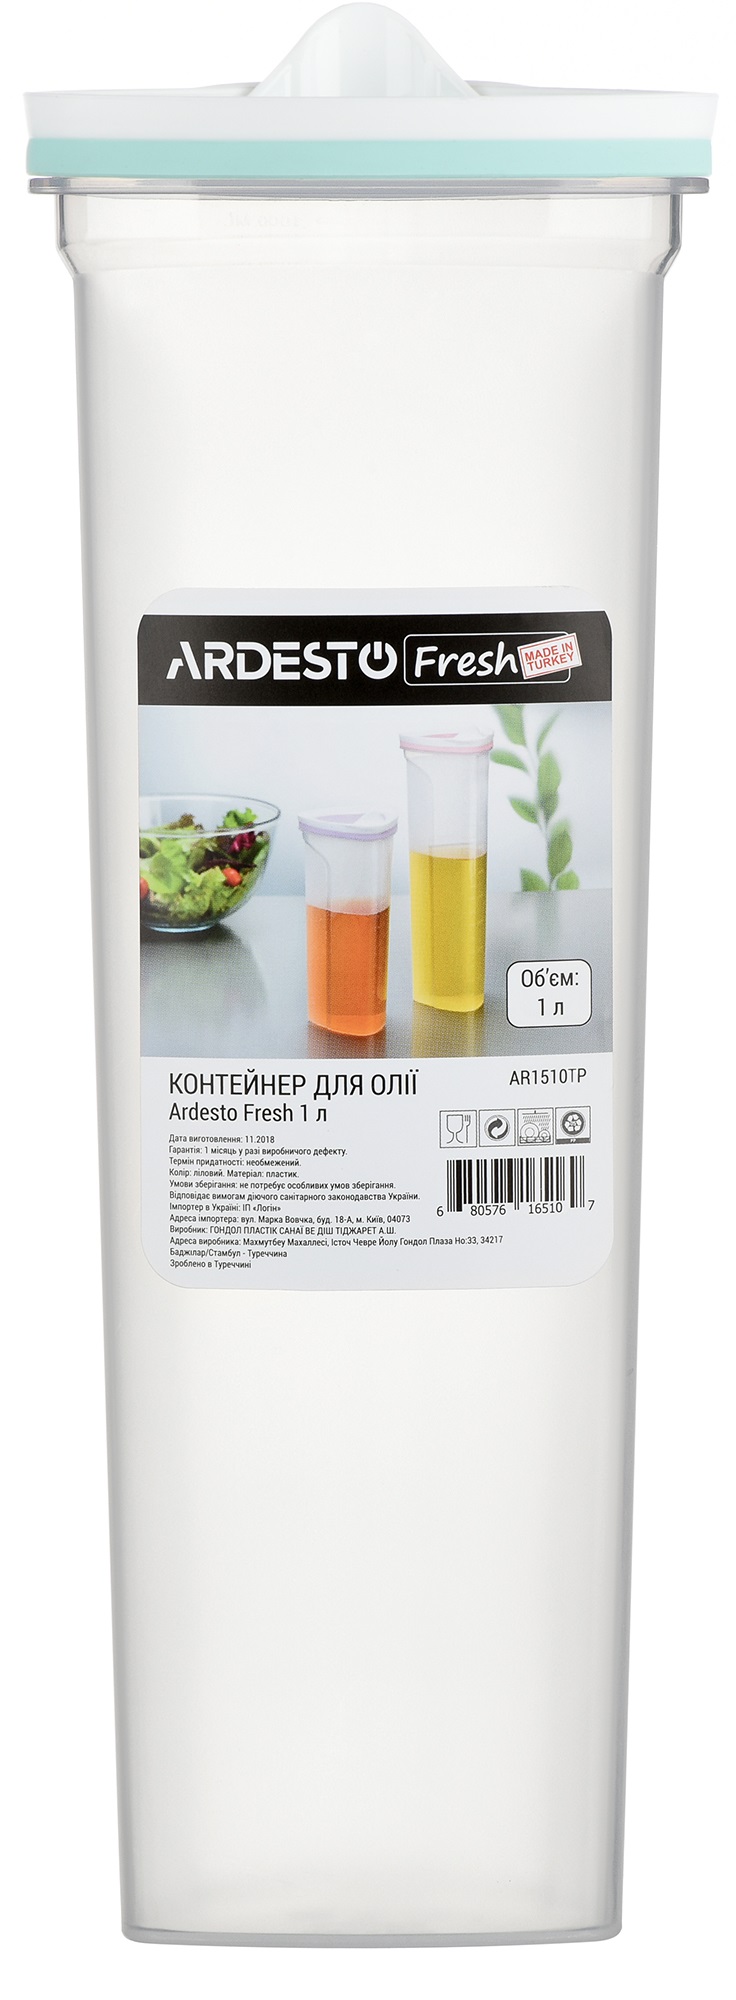 Контейнер для масла ARDESTO Fresh 1 л  (AR1510TP) в Киеве